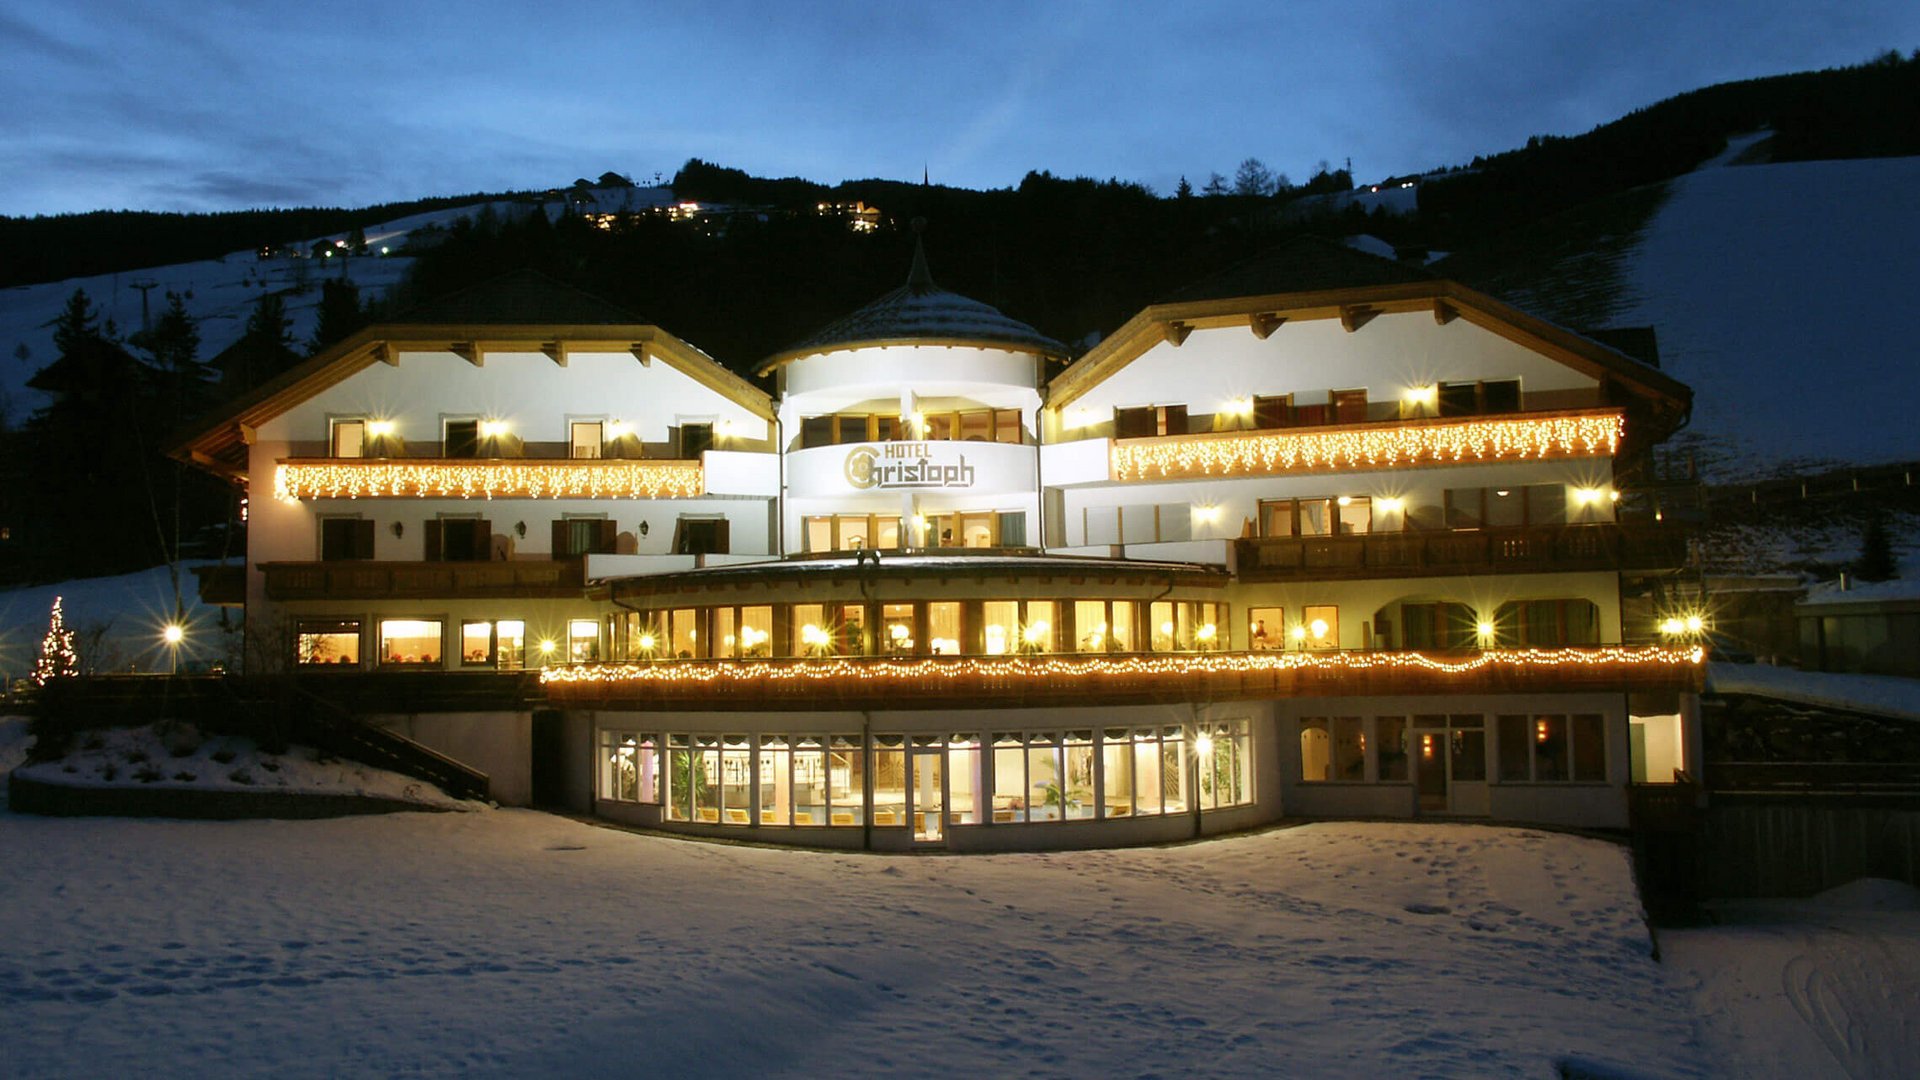 Recensioni sul nostro hotel a 4 stelle in Val Pusteria